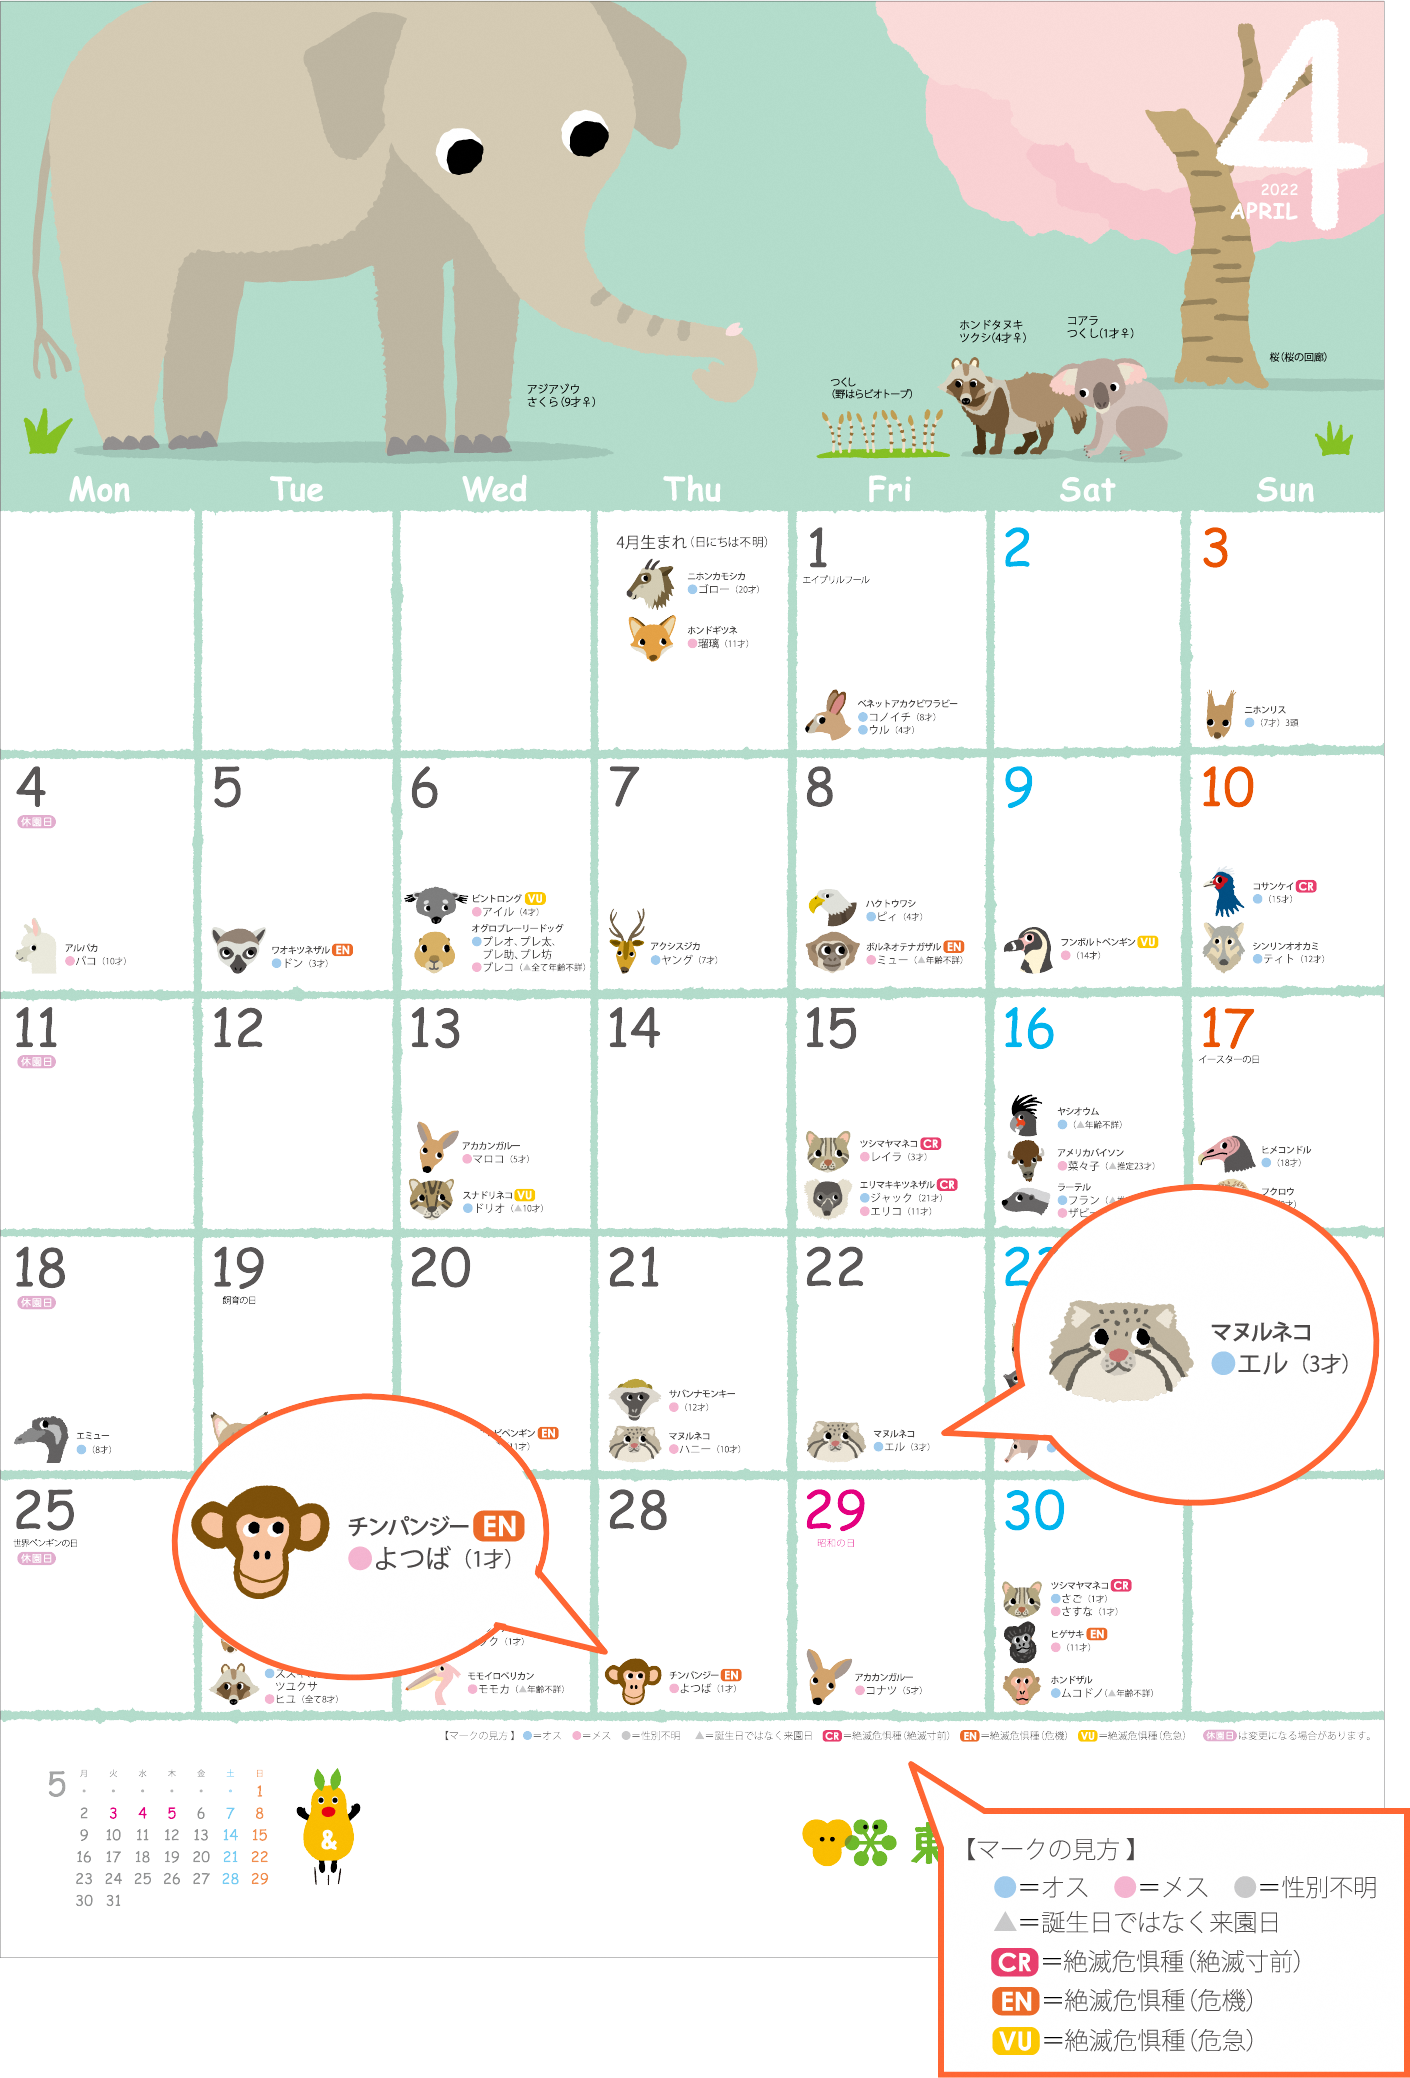 アニマーサリーカレンダー２０２２のお知らせ オフィシャルブログ 東山動植物園